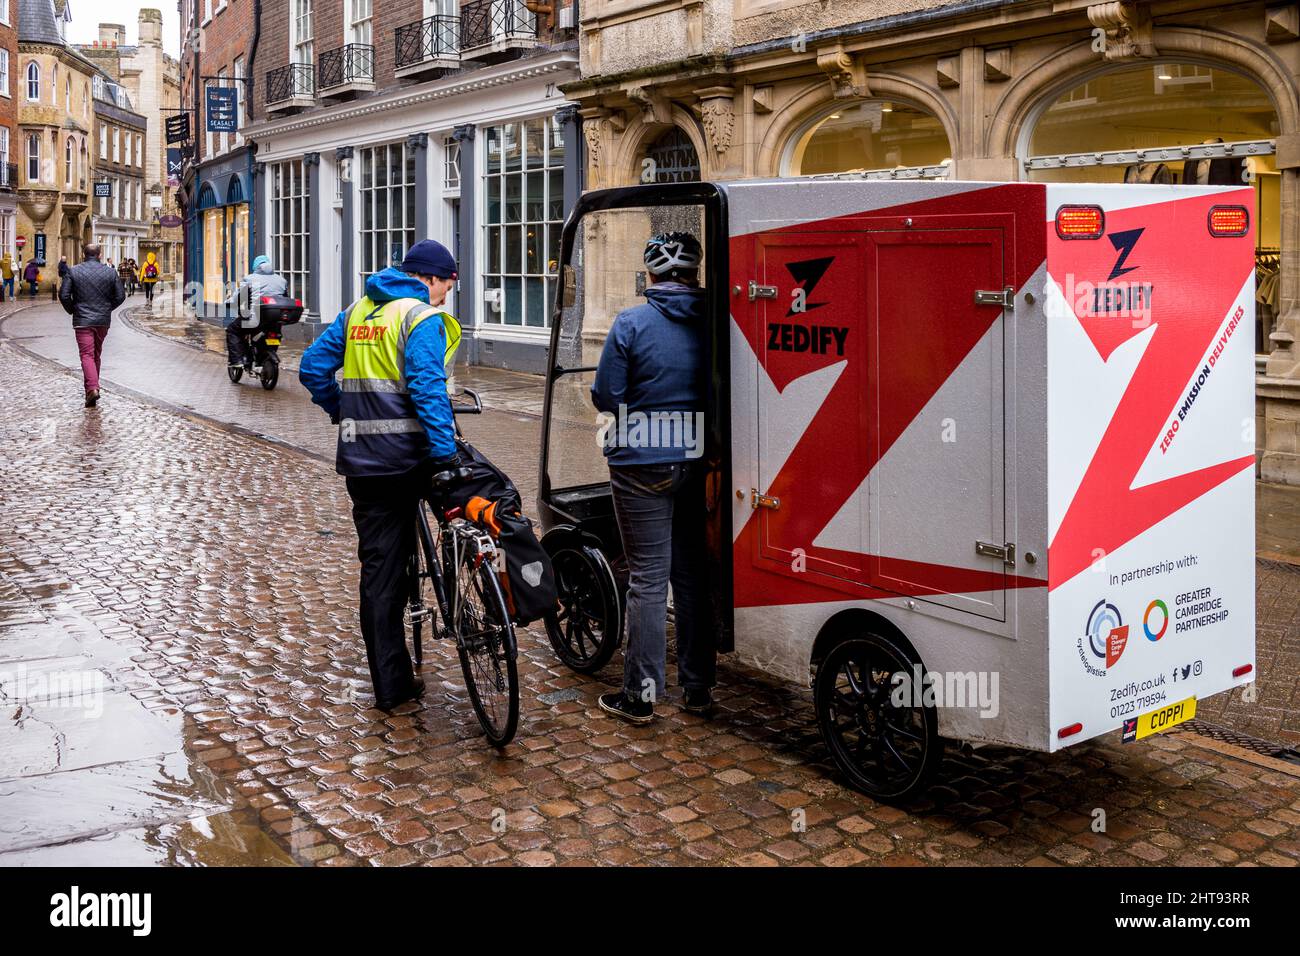 Un grand vélo électrique de livraison de cargaison de la compagnie de logistique locale Zedify garée sur Trinity St Central Cambridge. Solutions de livraison écologiques. Banque D'Images